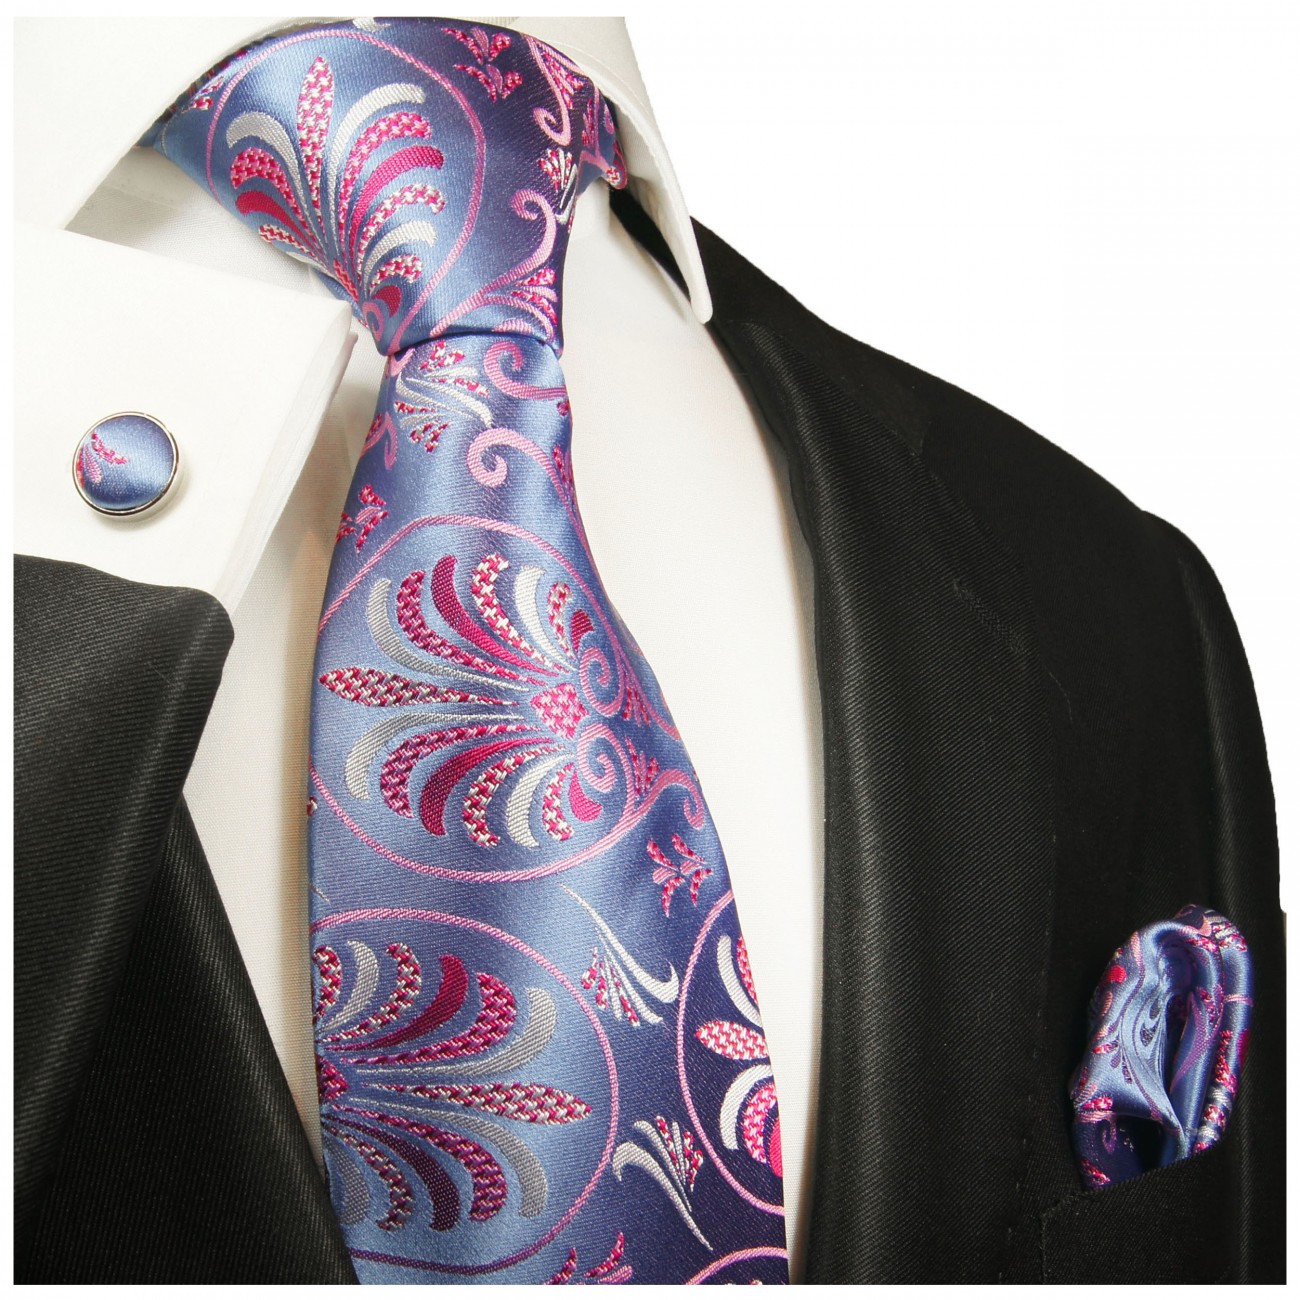 Shop blau | - Malone 1011 Krawatte floral jetzt bestellen Paul